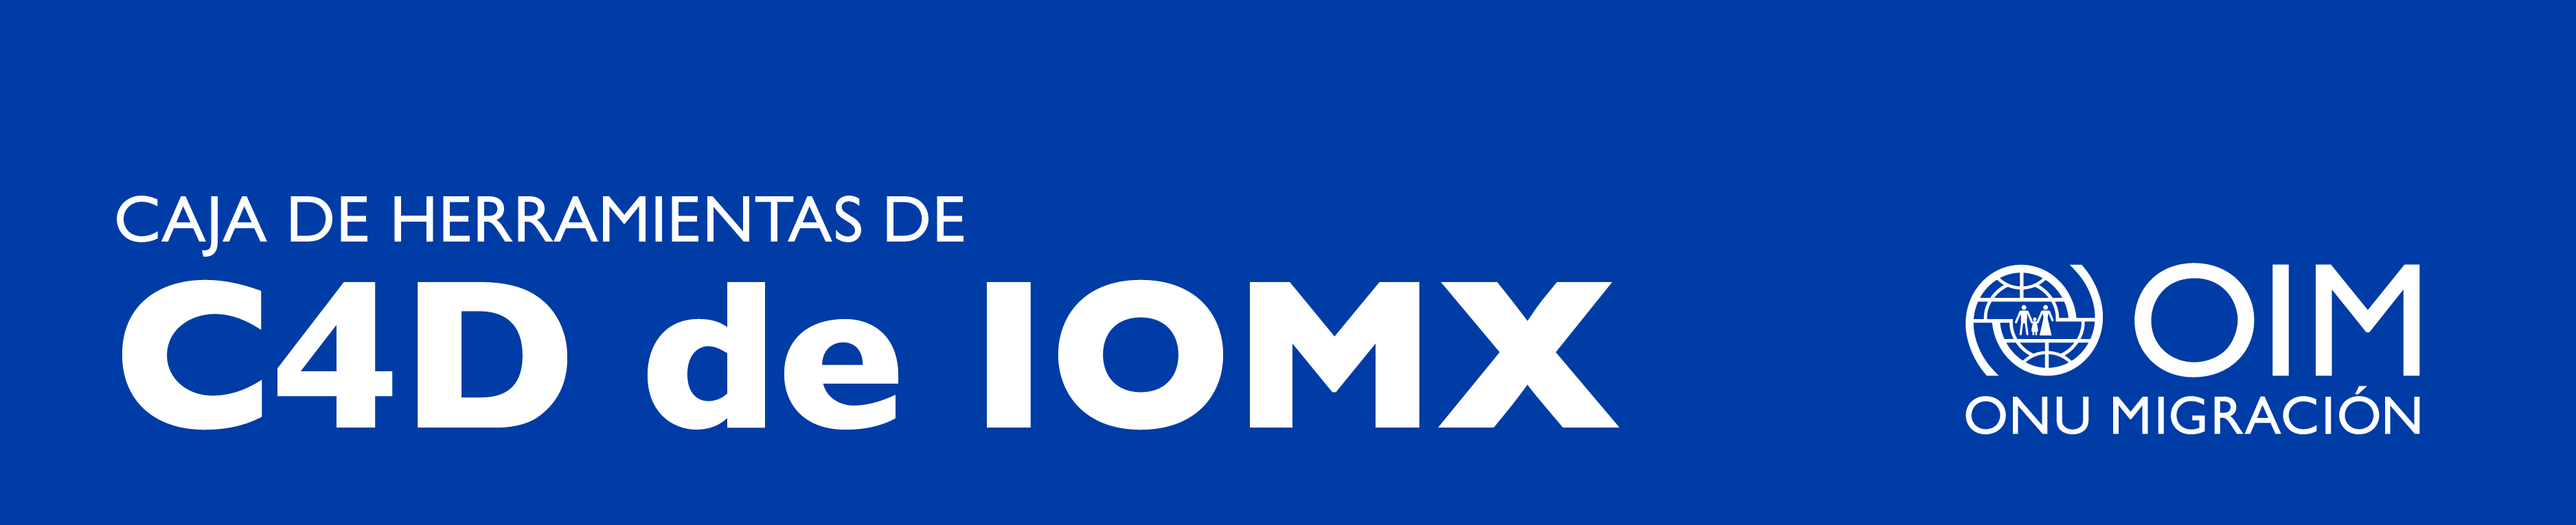 Caja de herramientas de C4D de IOMX